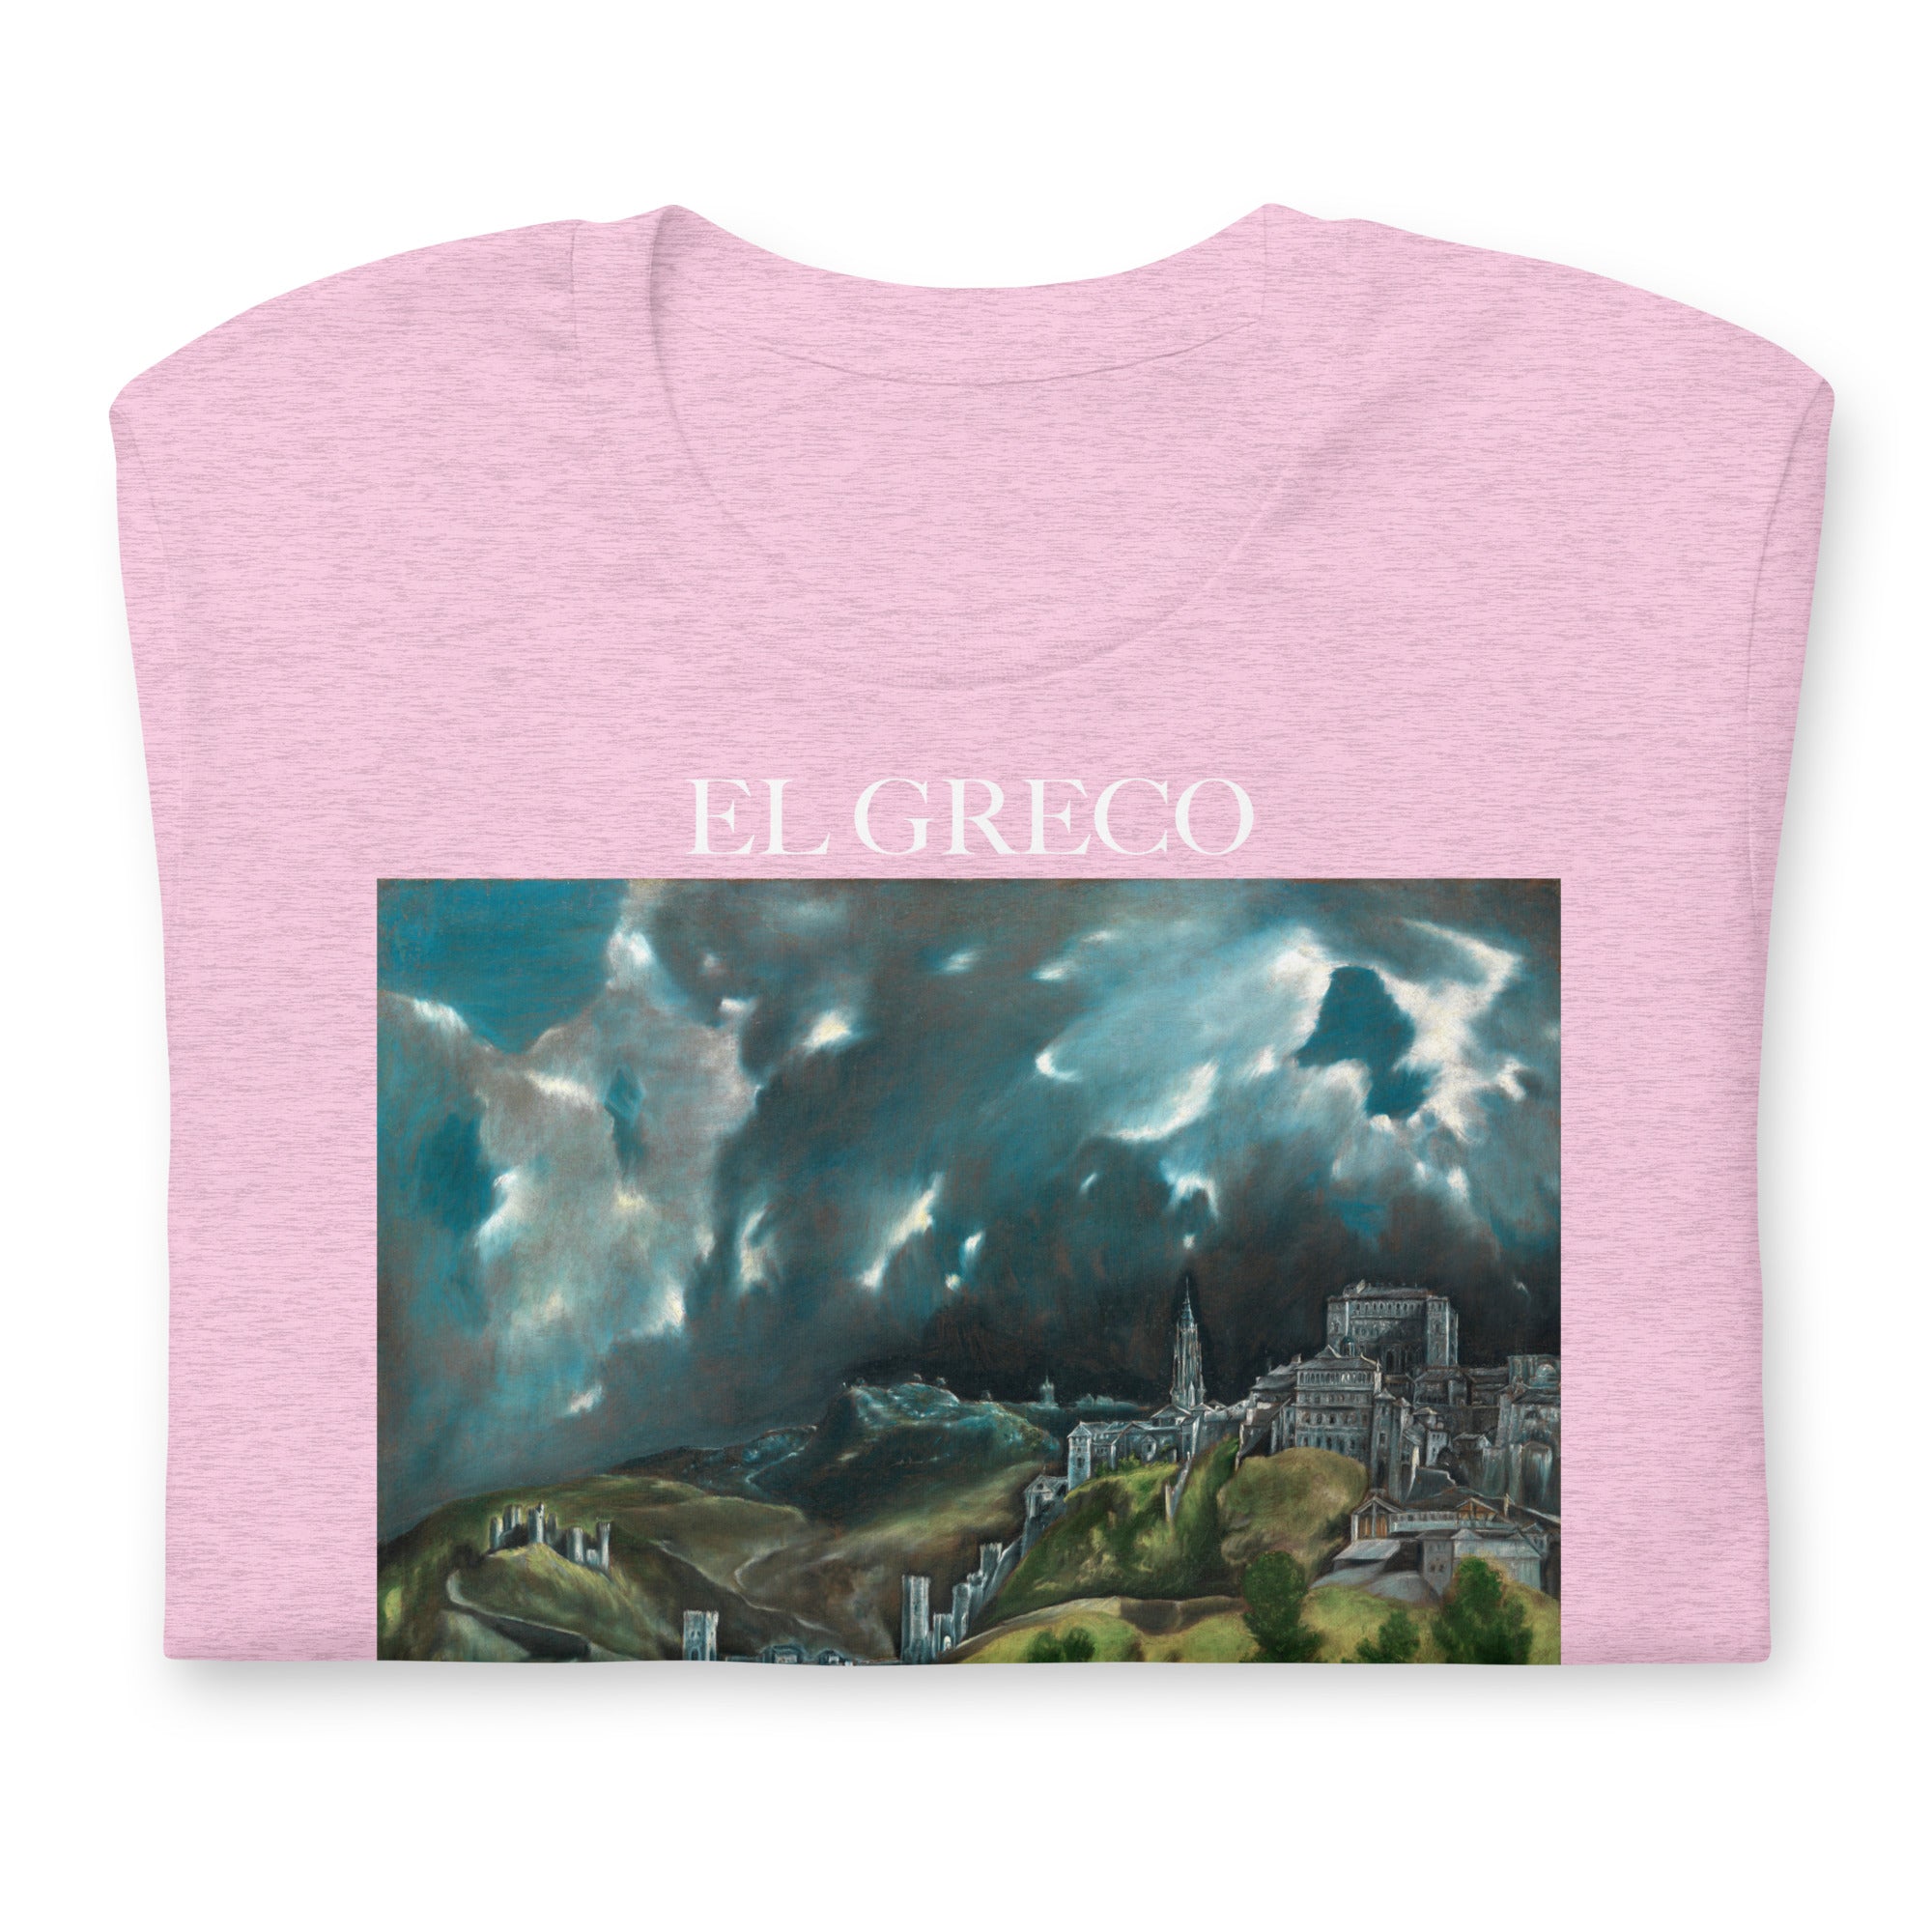 T-Shirt mit berühmtem Gemälde „Ansicht von Toledo“ von El Greco | Unisex-T-Shirt mit klassischem Kunst-Motiv